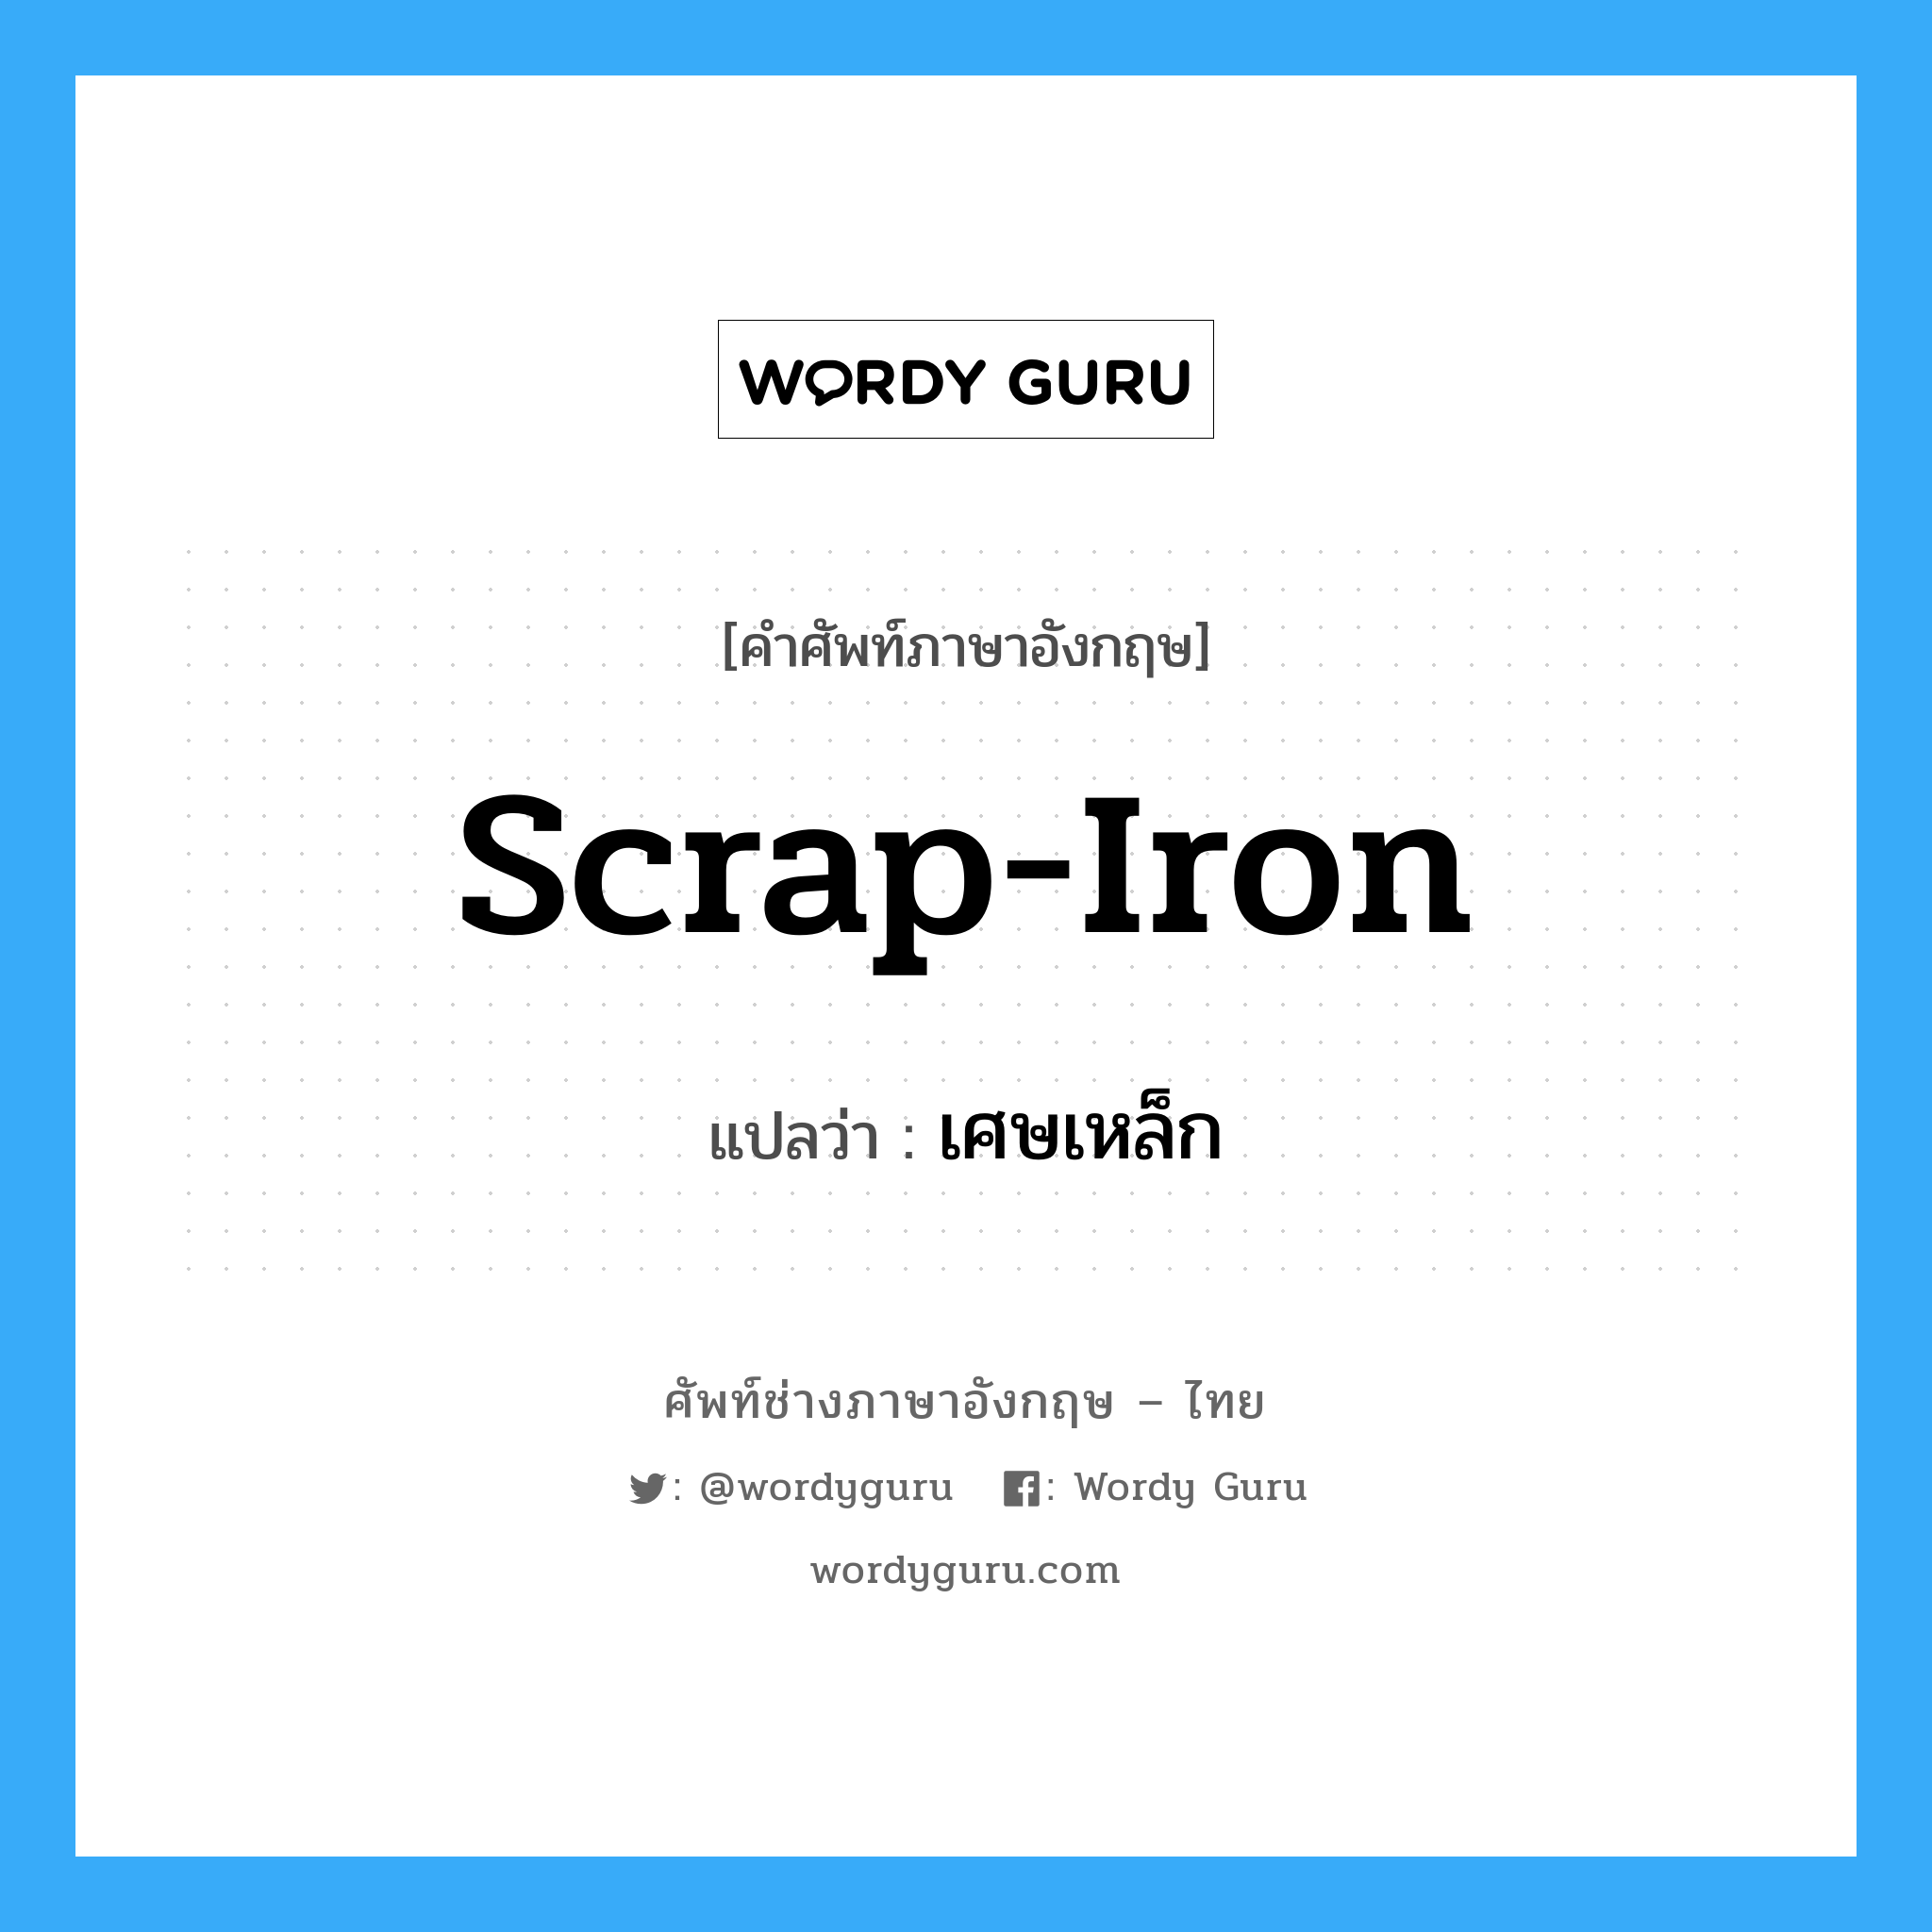 scrap iron แปลว่า?, คำศัพท์ช่างภาษาอังกฤษ - ไทย scrap-iron คำศัพท์ภาษาอังกฤษ scrap-iron แปลว่า เศษเหล็ก